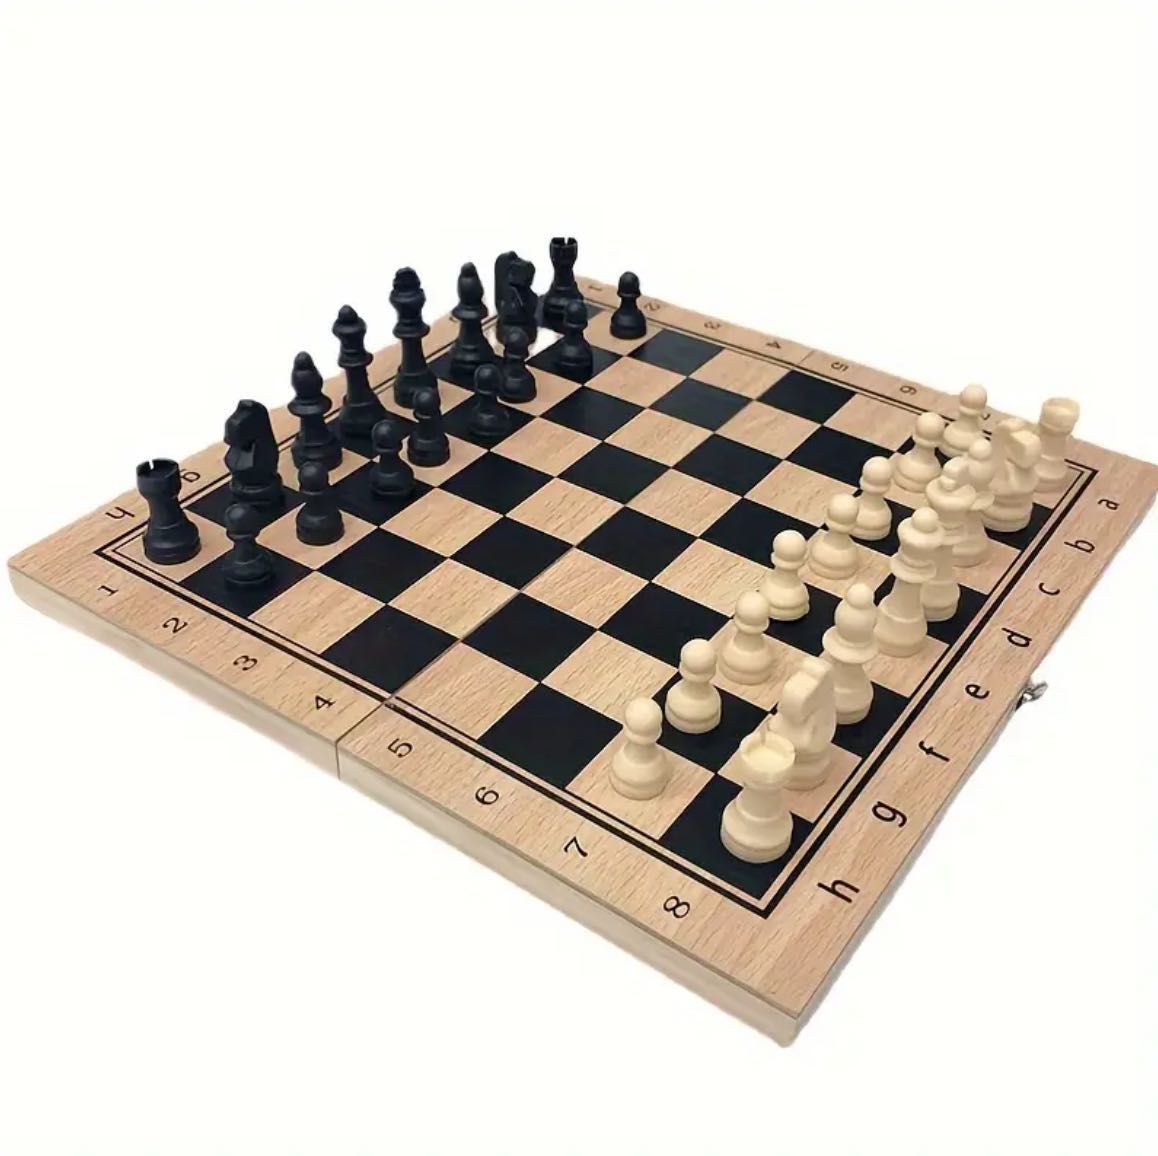 Tabla de Șah 2 in 1 piese de table si sah incluse.